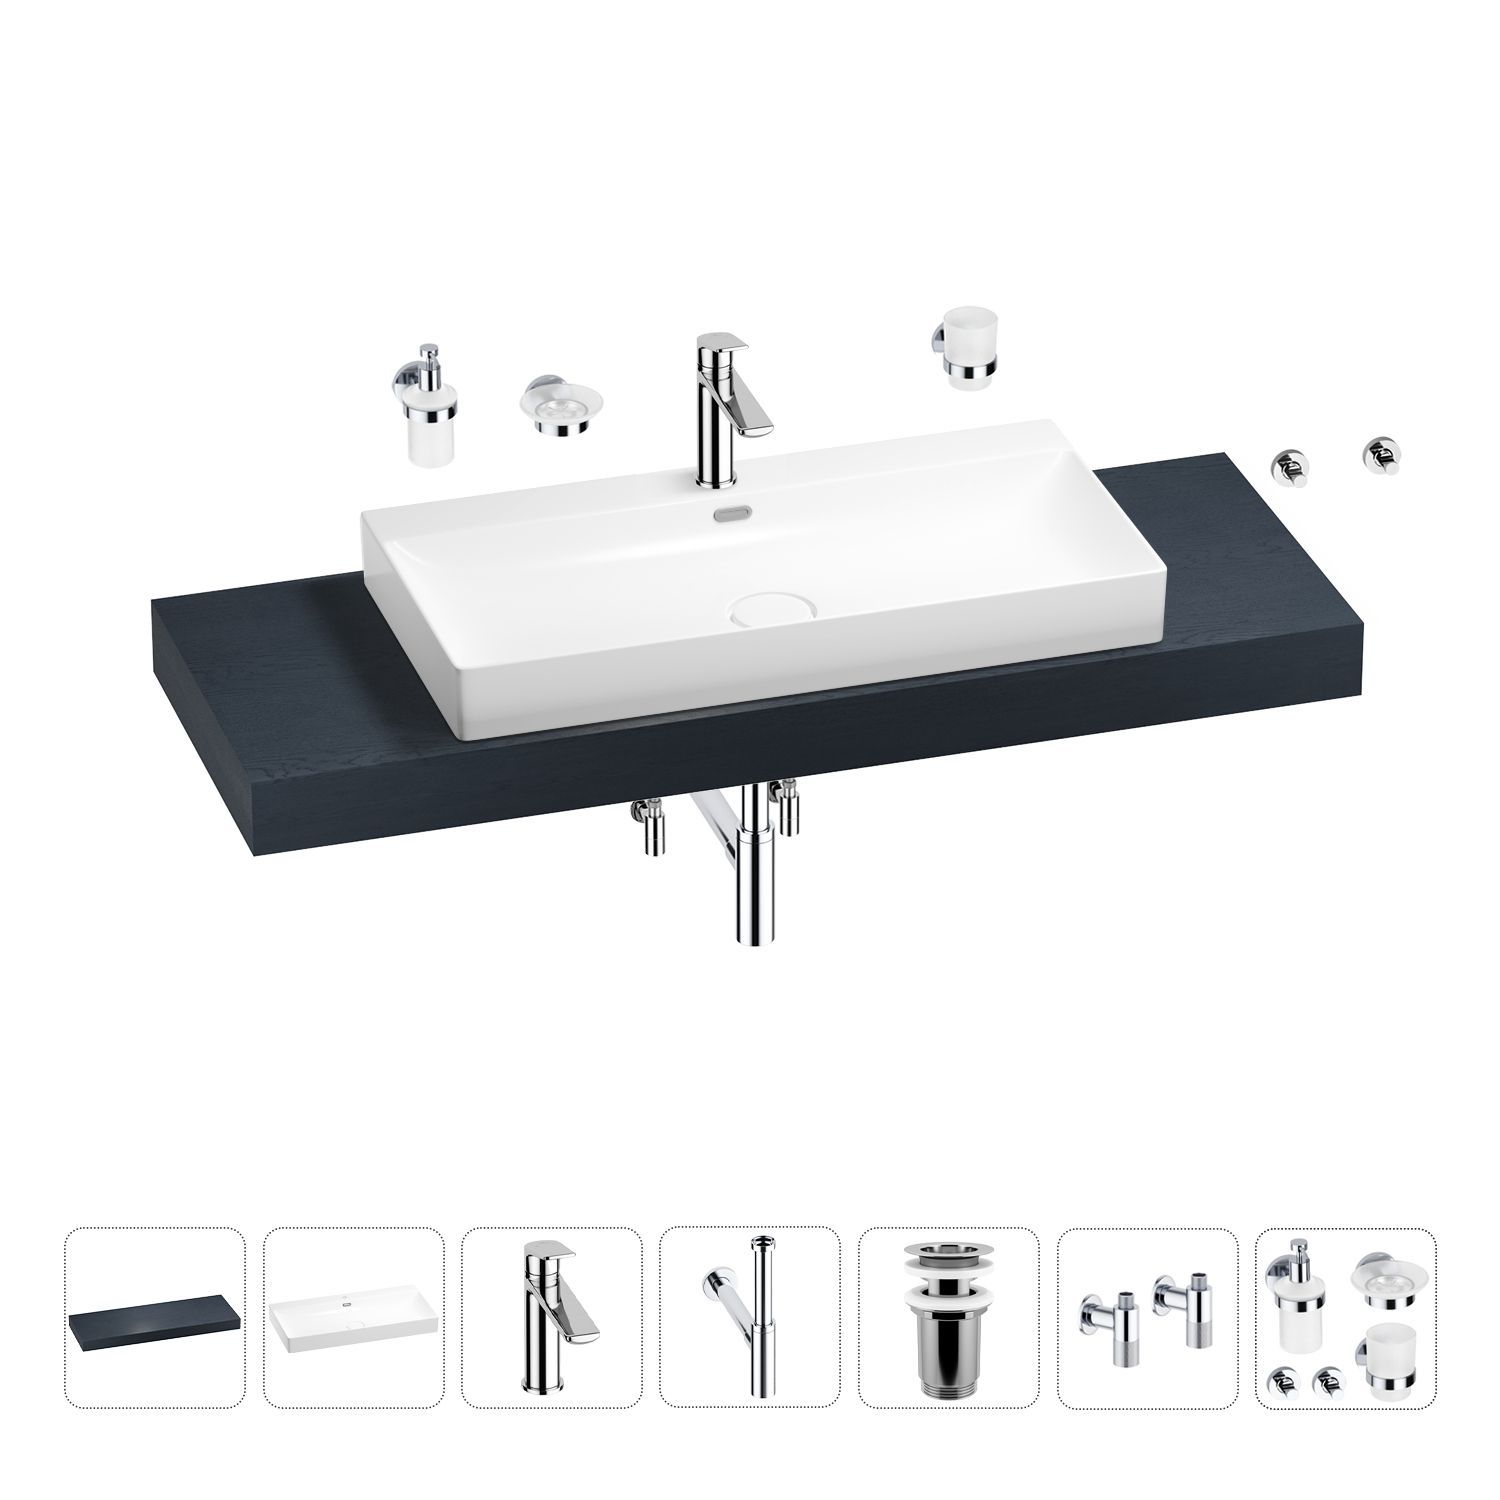 Раковина для ванны накладная на столешницу – эффектное решение для практичного интерьера